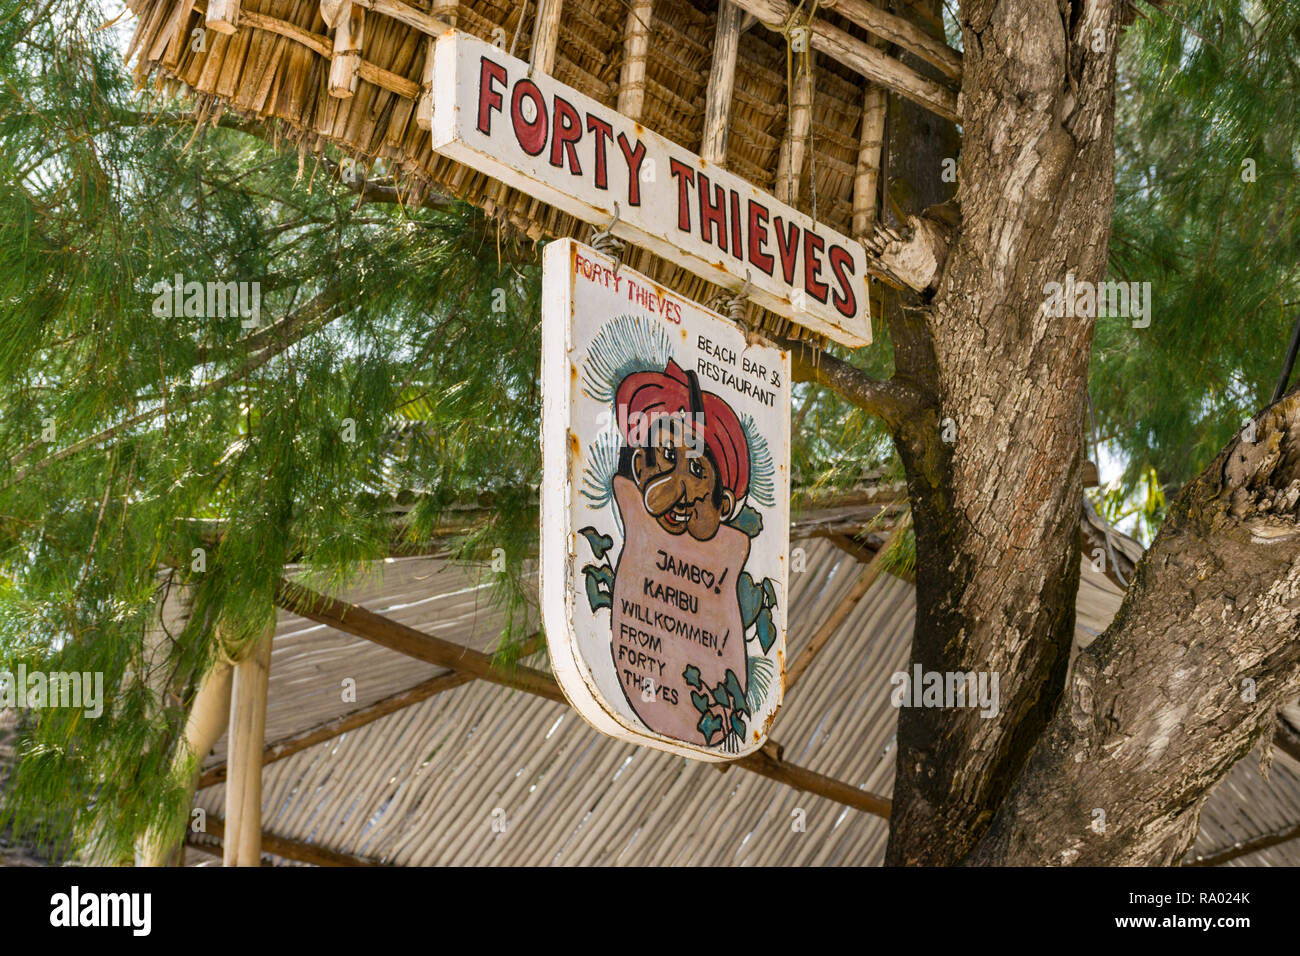 Un segno per il Forty Thieves beach bar e ristorante è appeso a un albero in ombra in una giornata di sole, Diani, Kenya Foto Stock